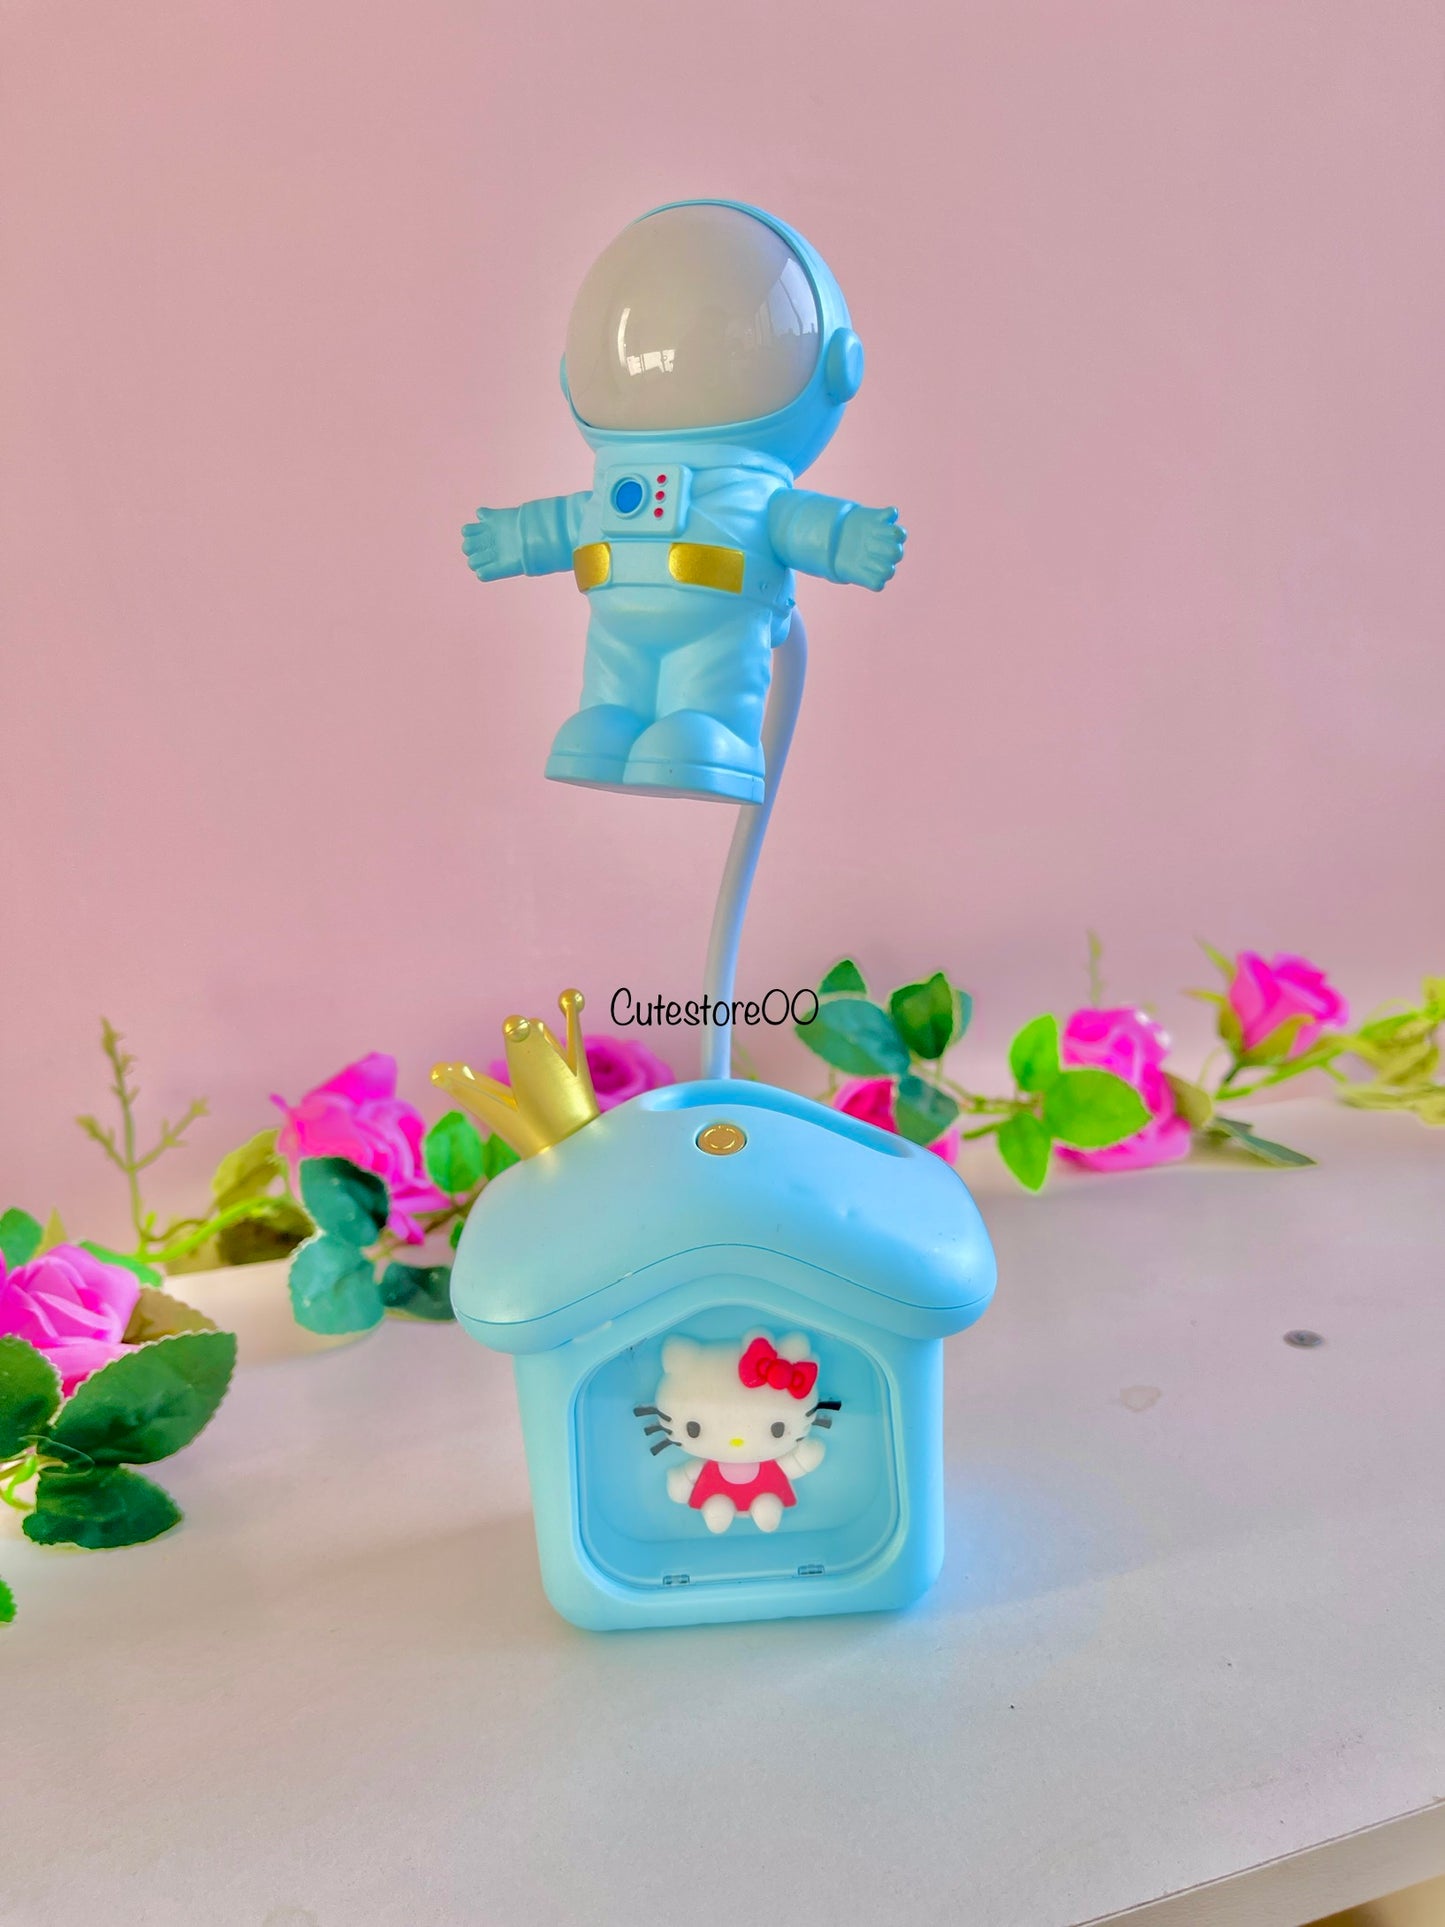 Lampara de casita astronauta color al azar (de kitty)